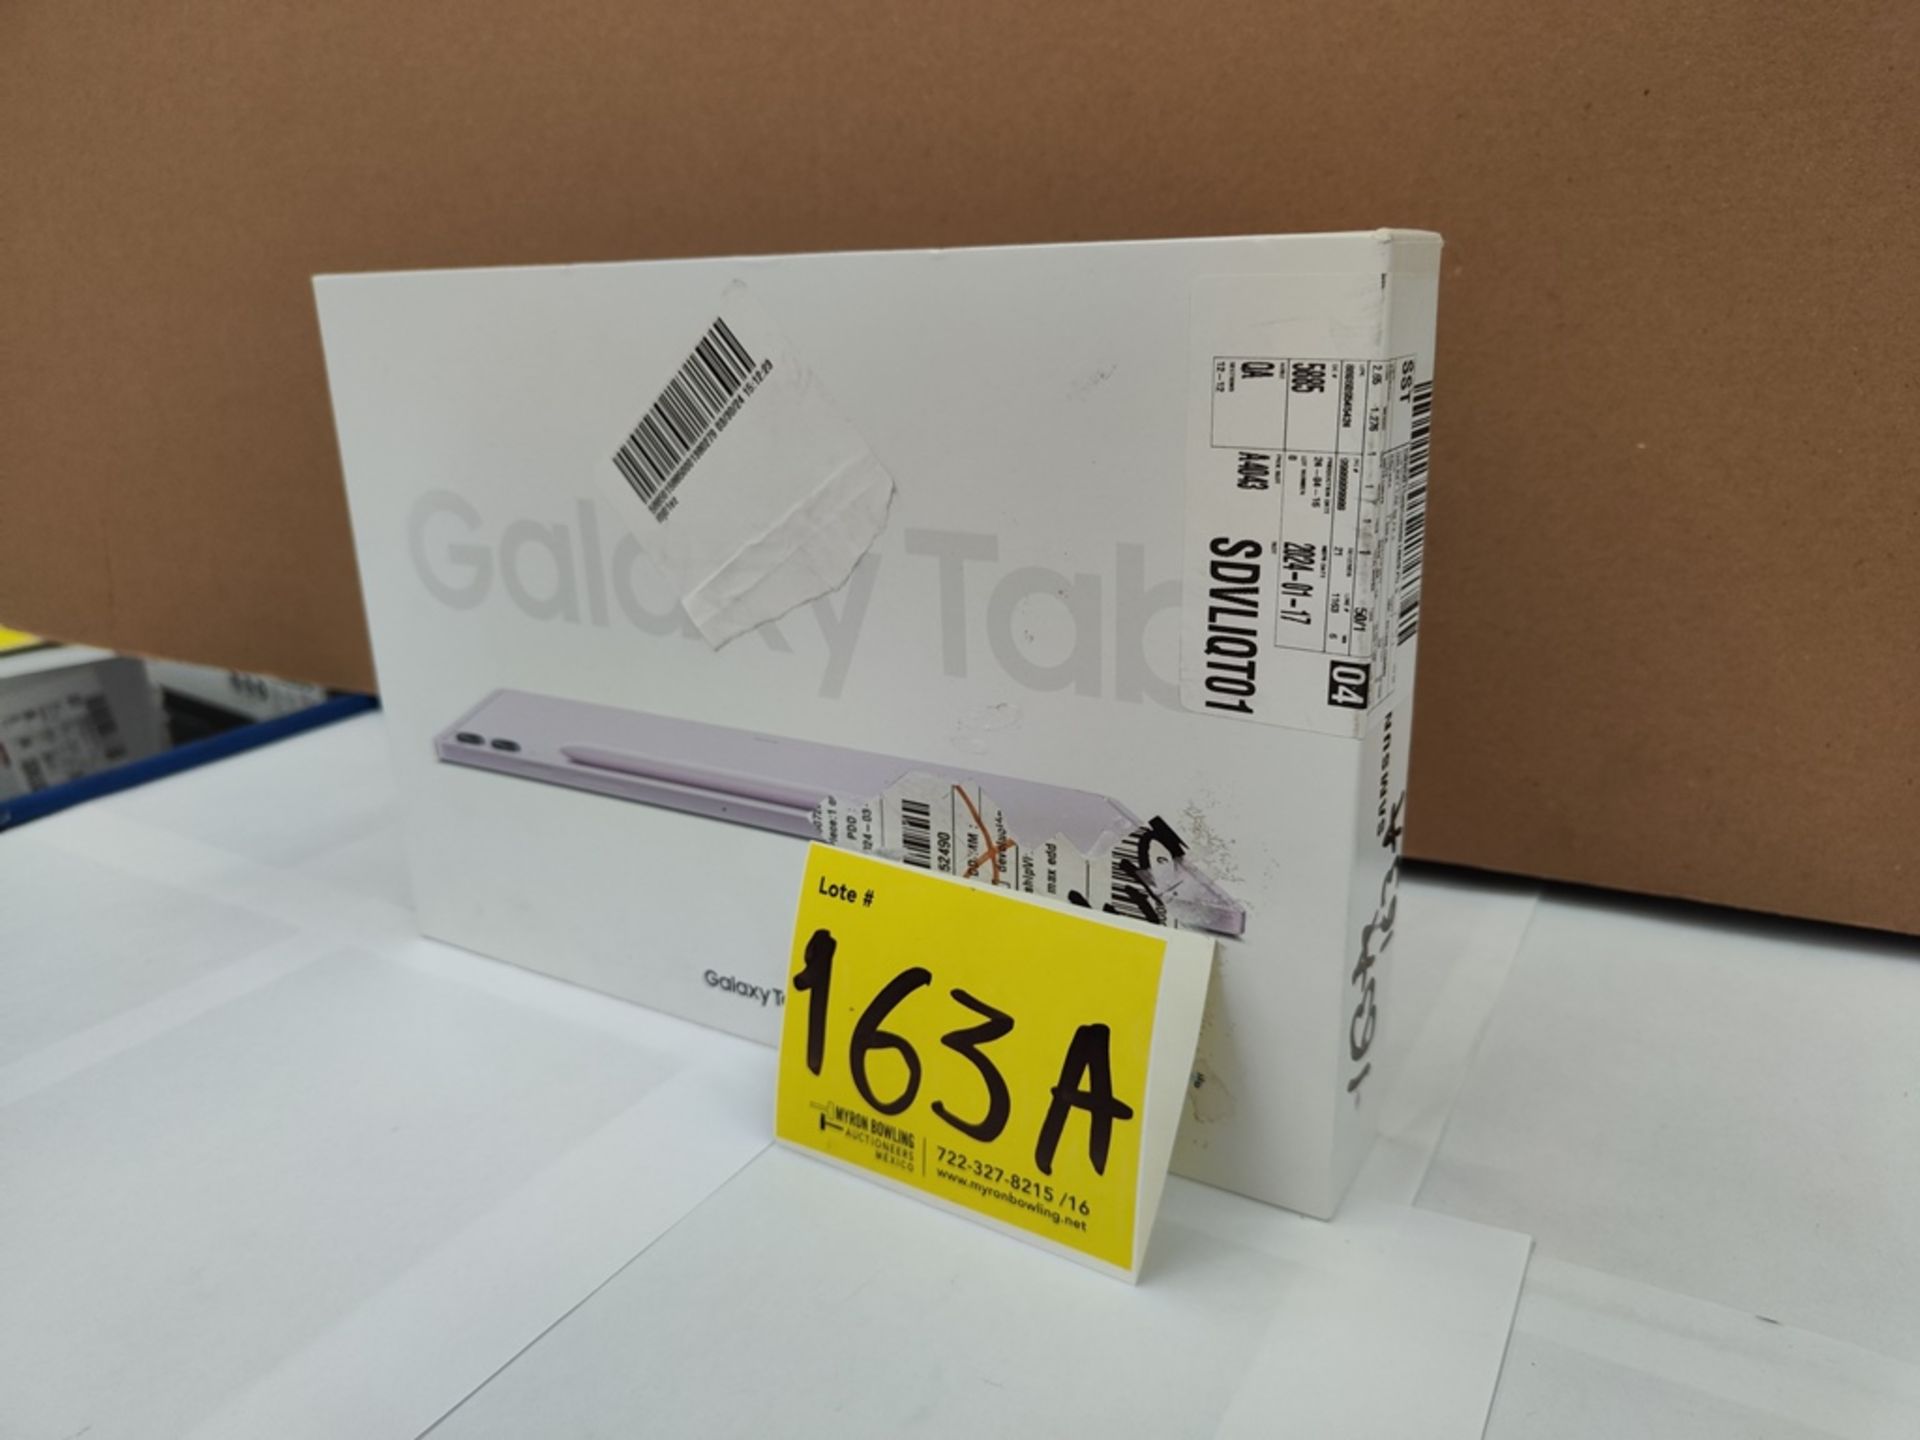 (NUEVO) Galaxy TAB S9 FE, Serie R52X300AX8E, Color LILA, 128 GB De Almacenamiento + 8GB RAM - Image 3 of 7